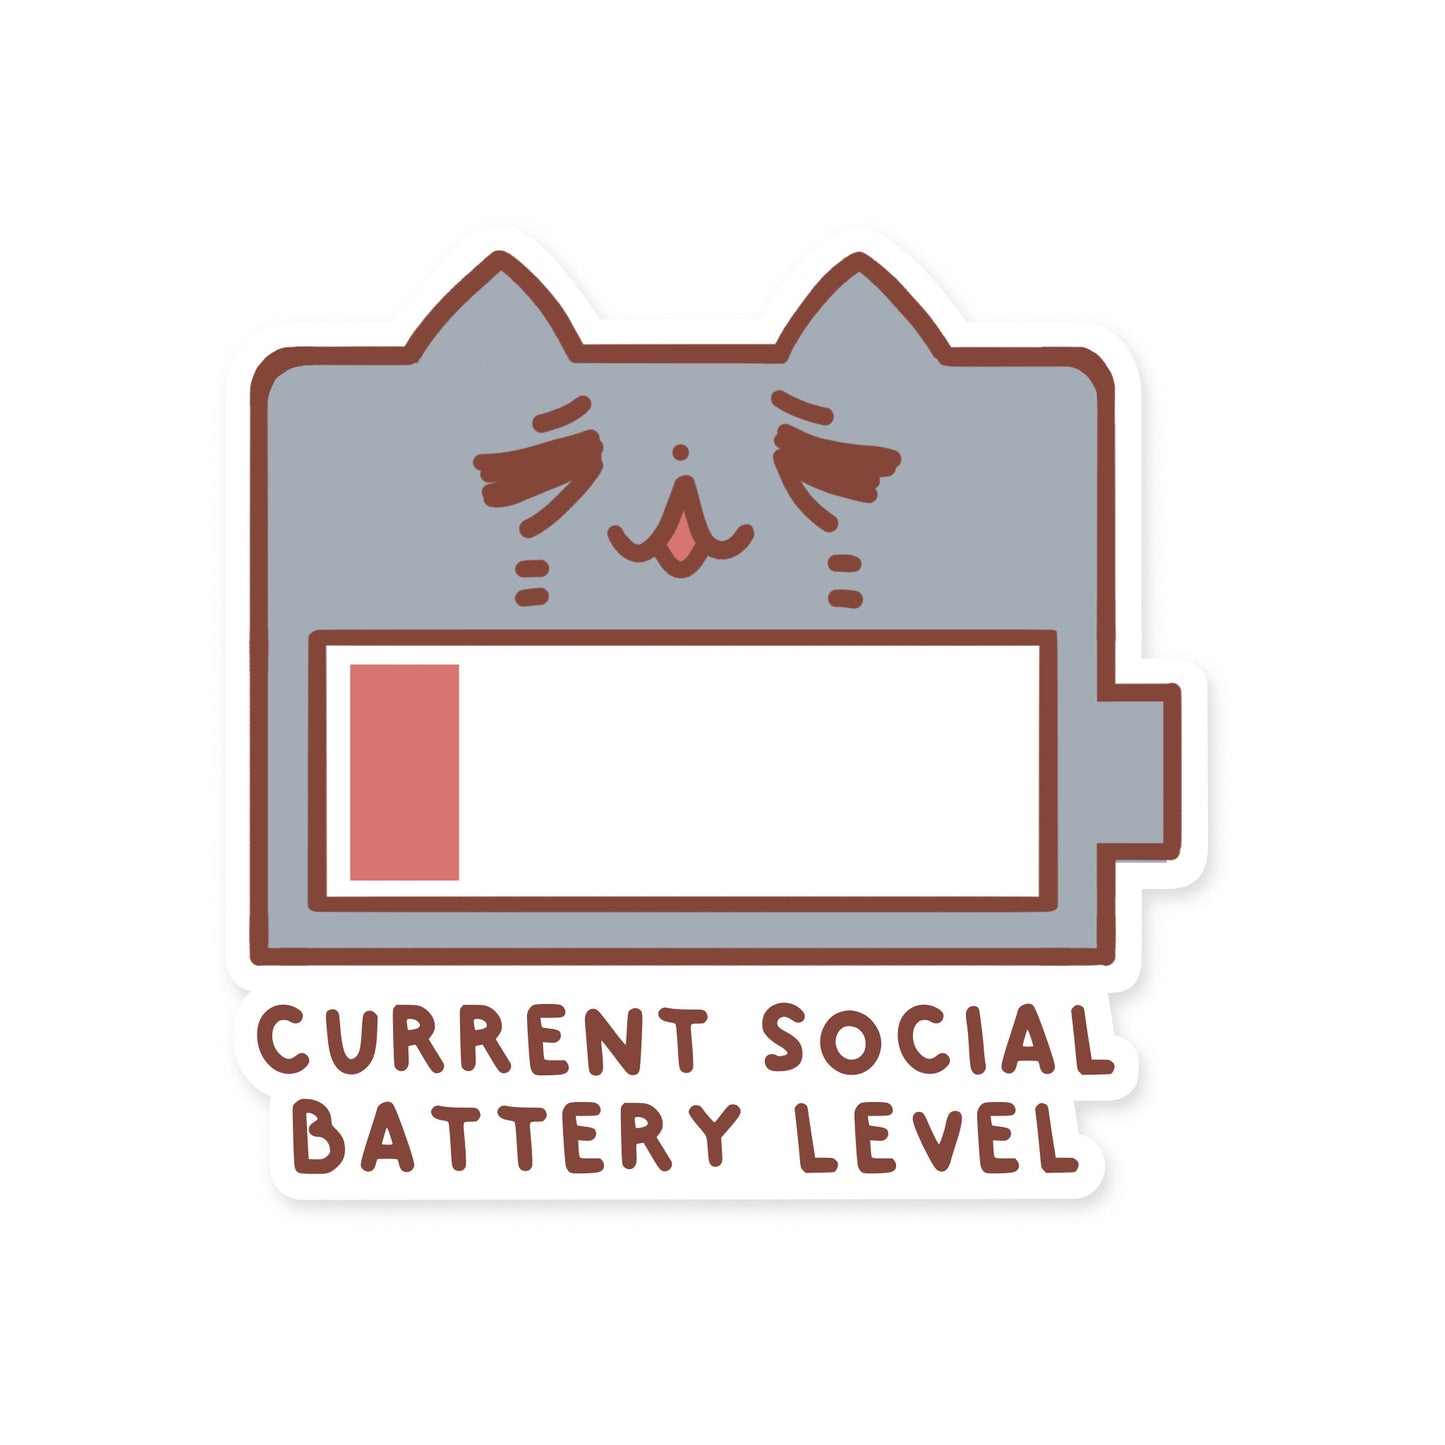 Neko "Current Social Battery Level" Matte Waterproof Sticker with Gloss Spot UV